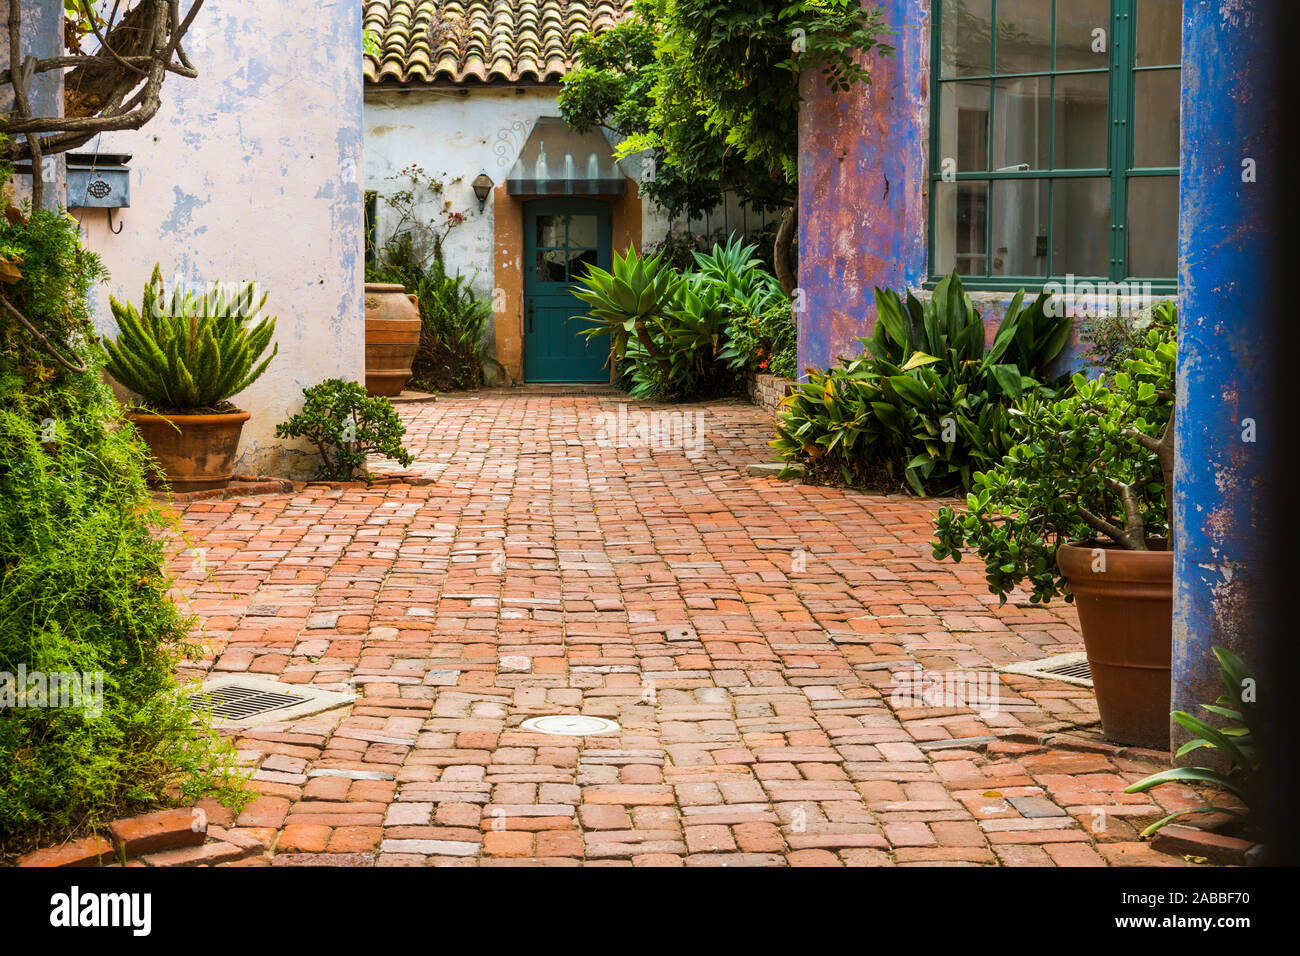 Jardin pittoresque cour intérieure avec des plantes en pot et entouré de murs en plâtre rustique teintes éclatantes de violet, rose et bleu et en brique avec pavées Banque D'Images